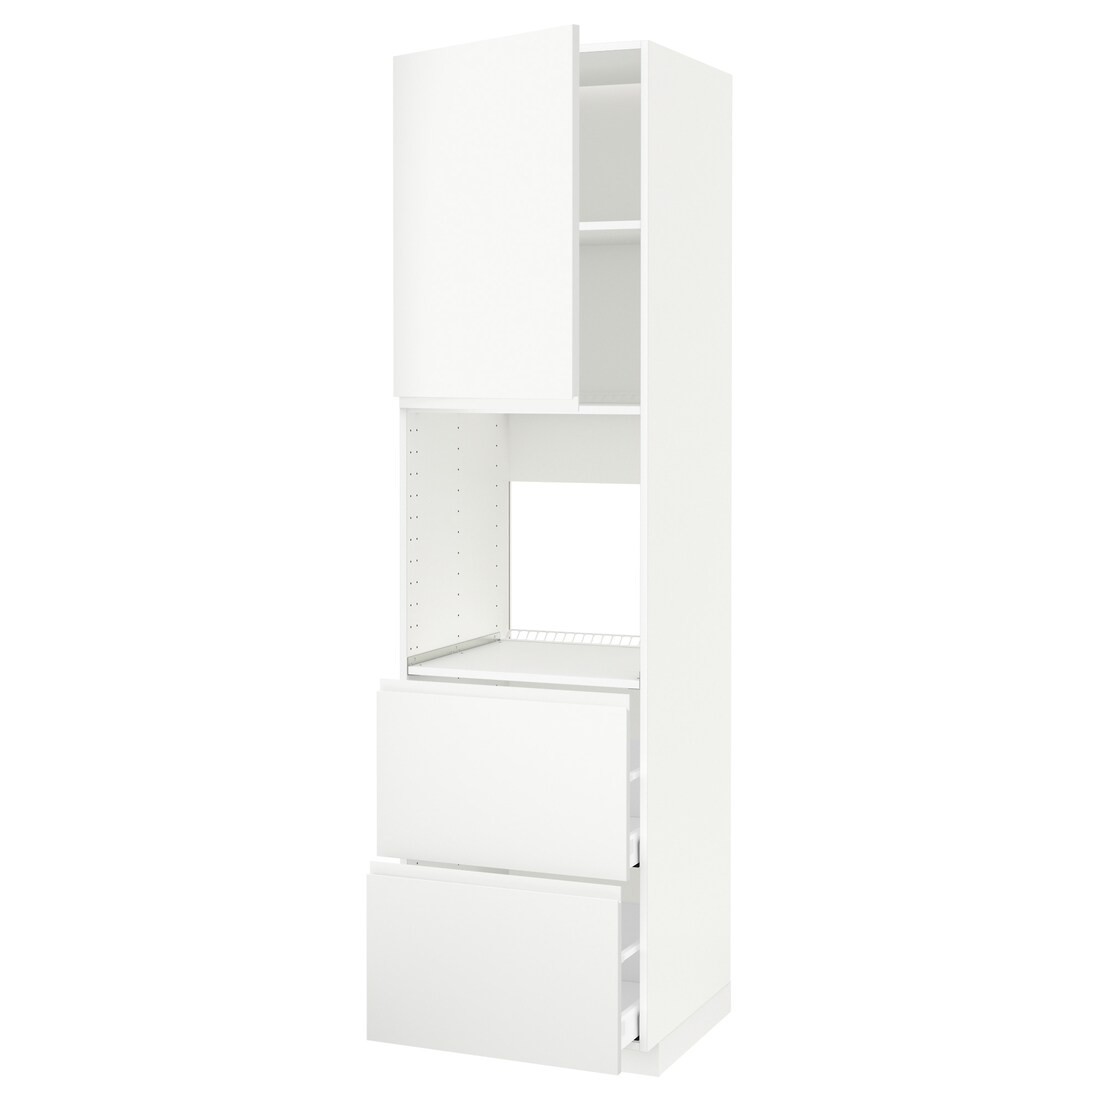 METOD МЕТОД / MAXIMERA МАКСИМЕРА Высокий шкаф для духовки с дверцей / ящиками, белый / Voxtorp матовый белый, 60x60x220 см